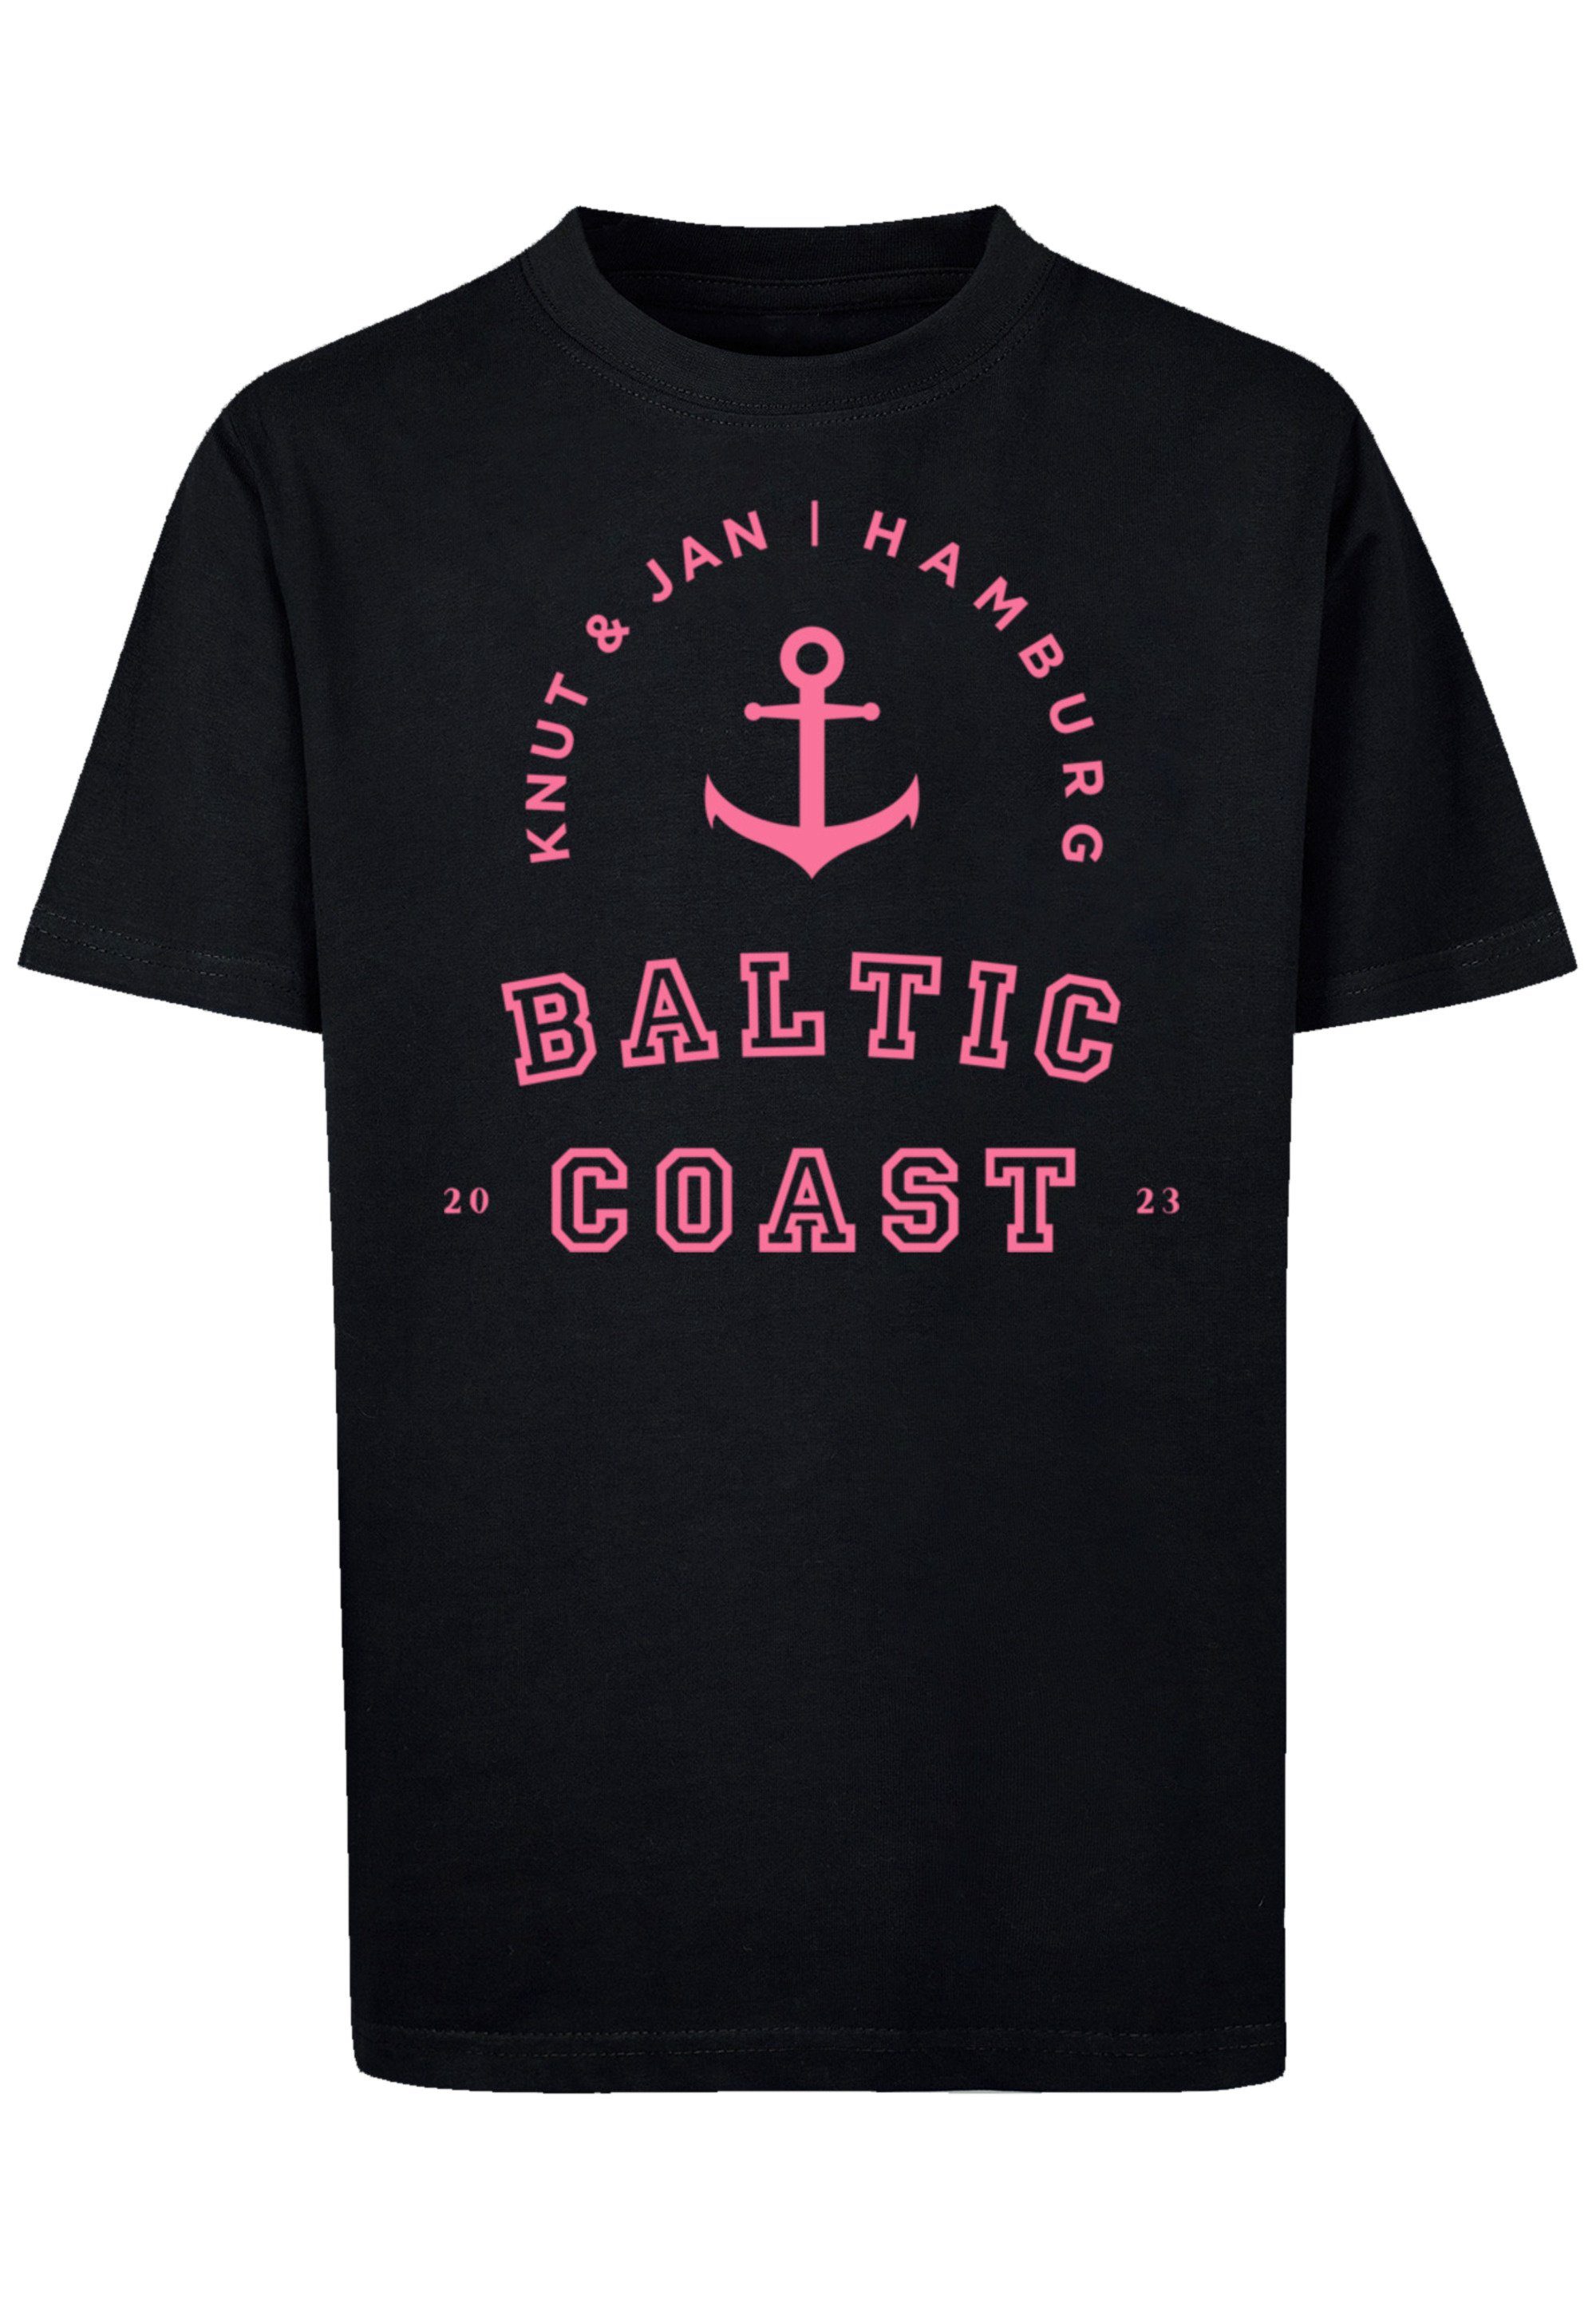 Jan & schwarz Baltic Print T-Shirt Hamburg F4NT4STIC Coast Knut